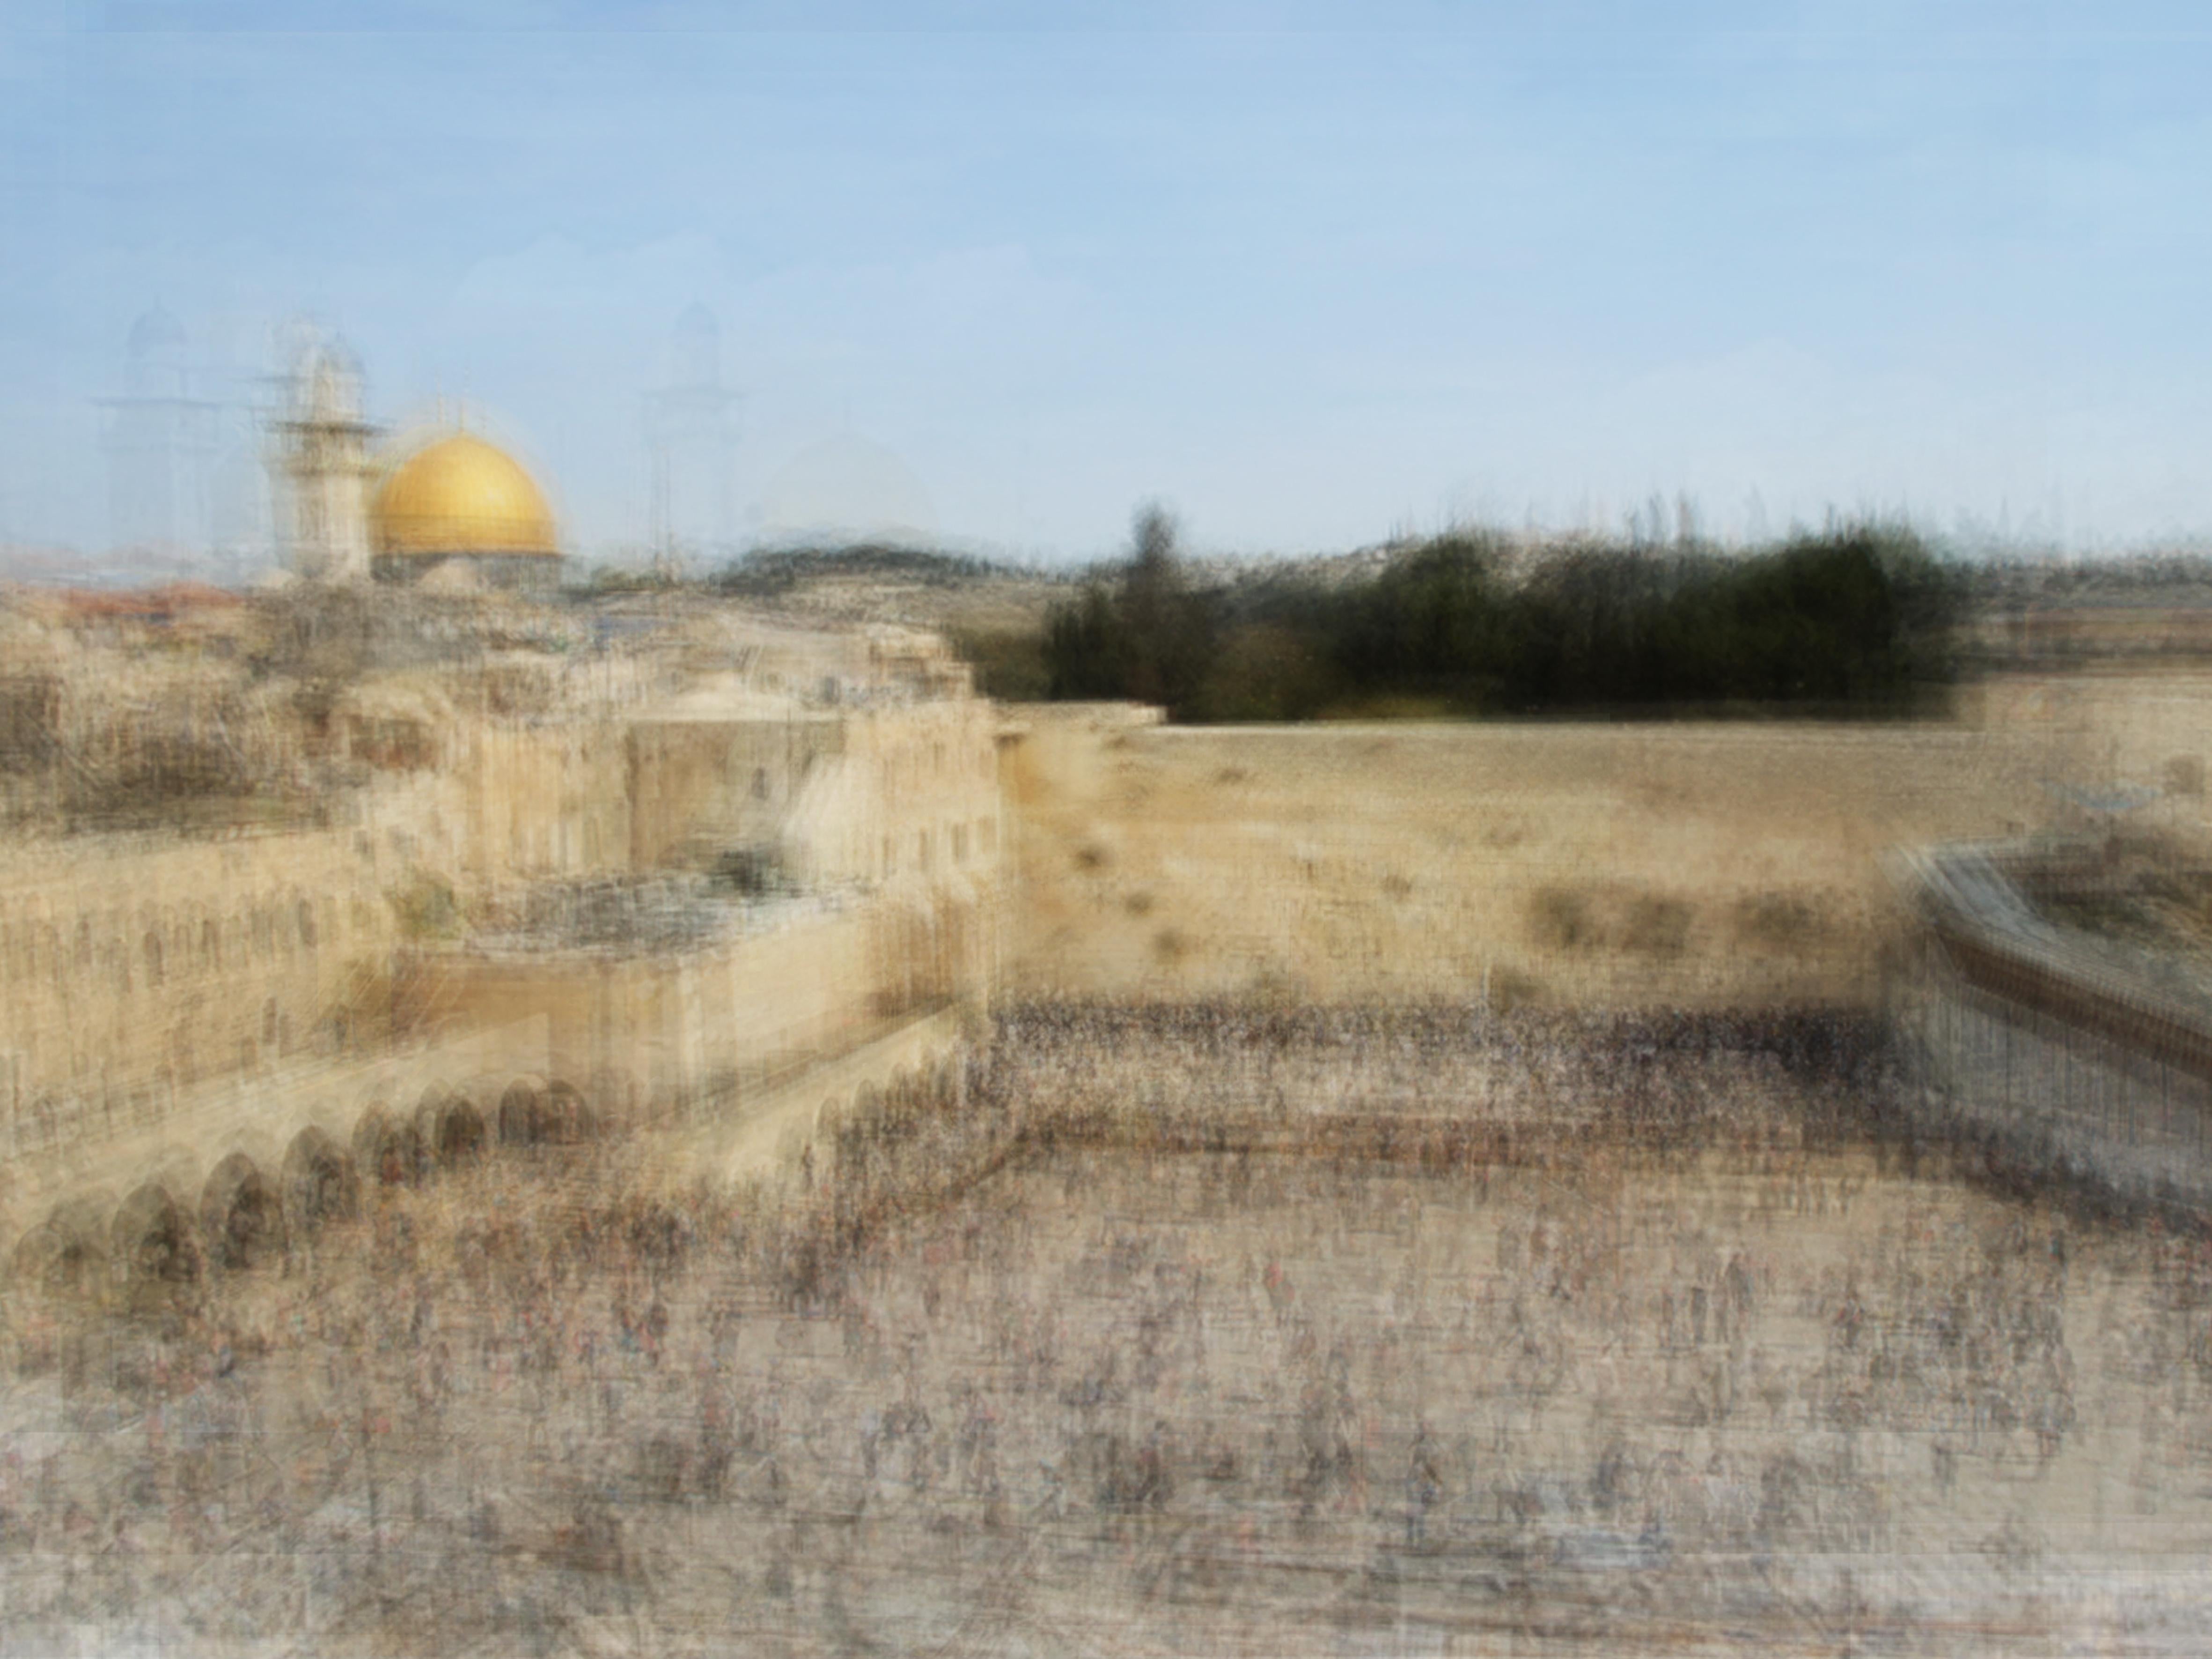 Jerusalem - Photograph by Corinne Vionnet